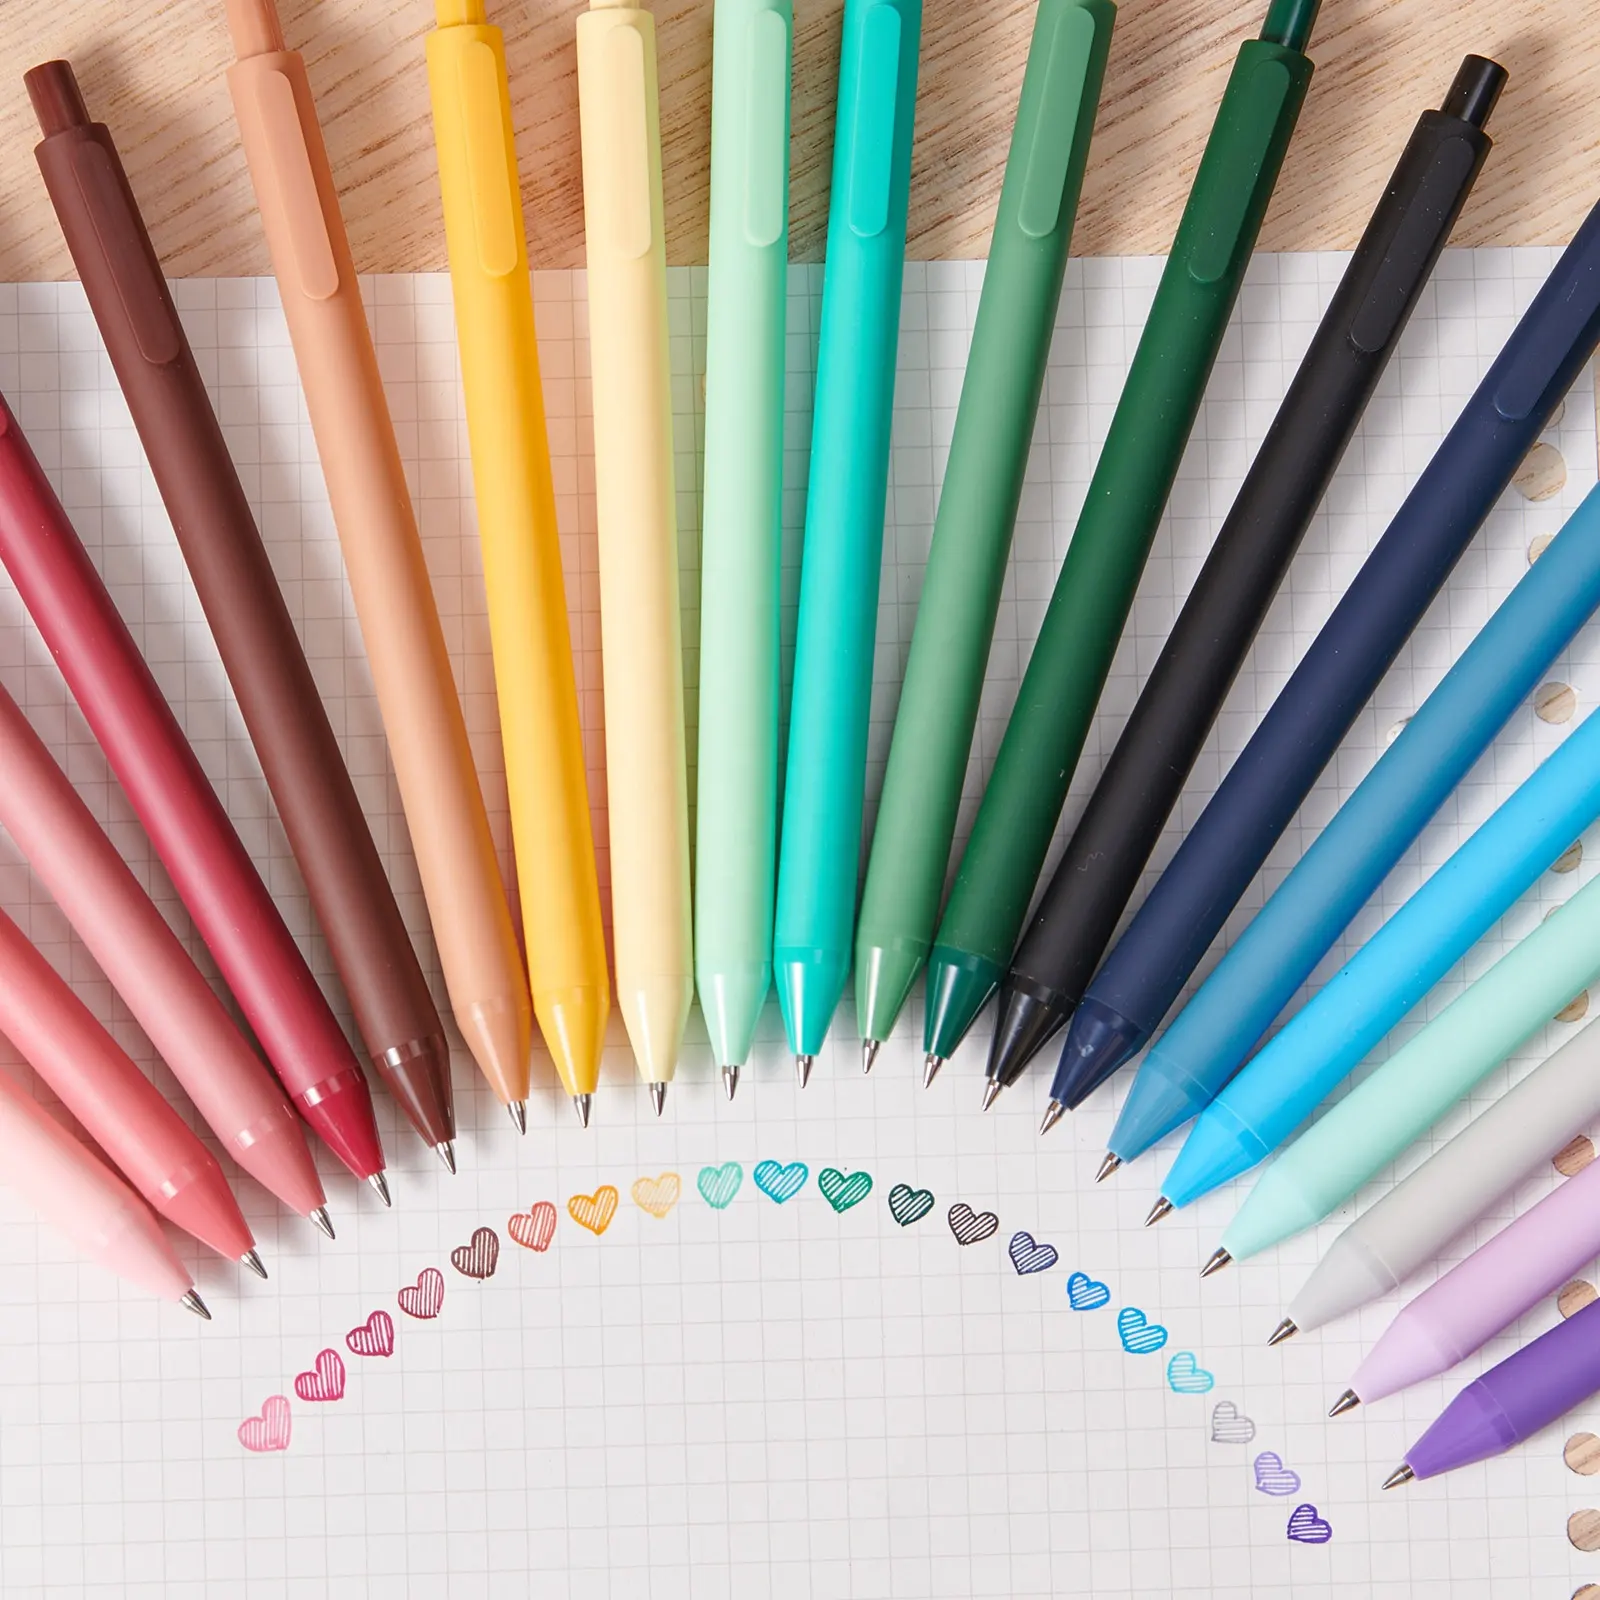 KACO pena bolpoin murni desain asli dapat ditarik 1.0/1.2/1.4mm pulpen bolpoin promosi alat tulis lucu Sup kantor sekolah